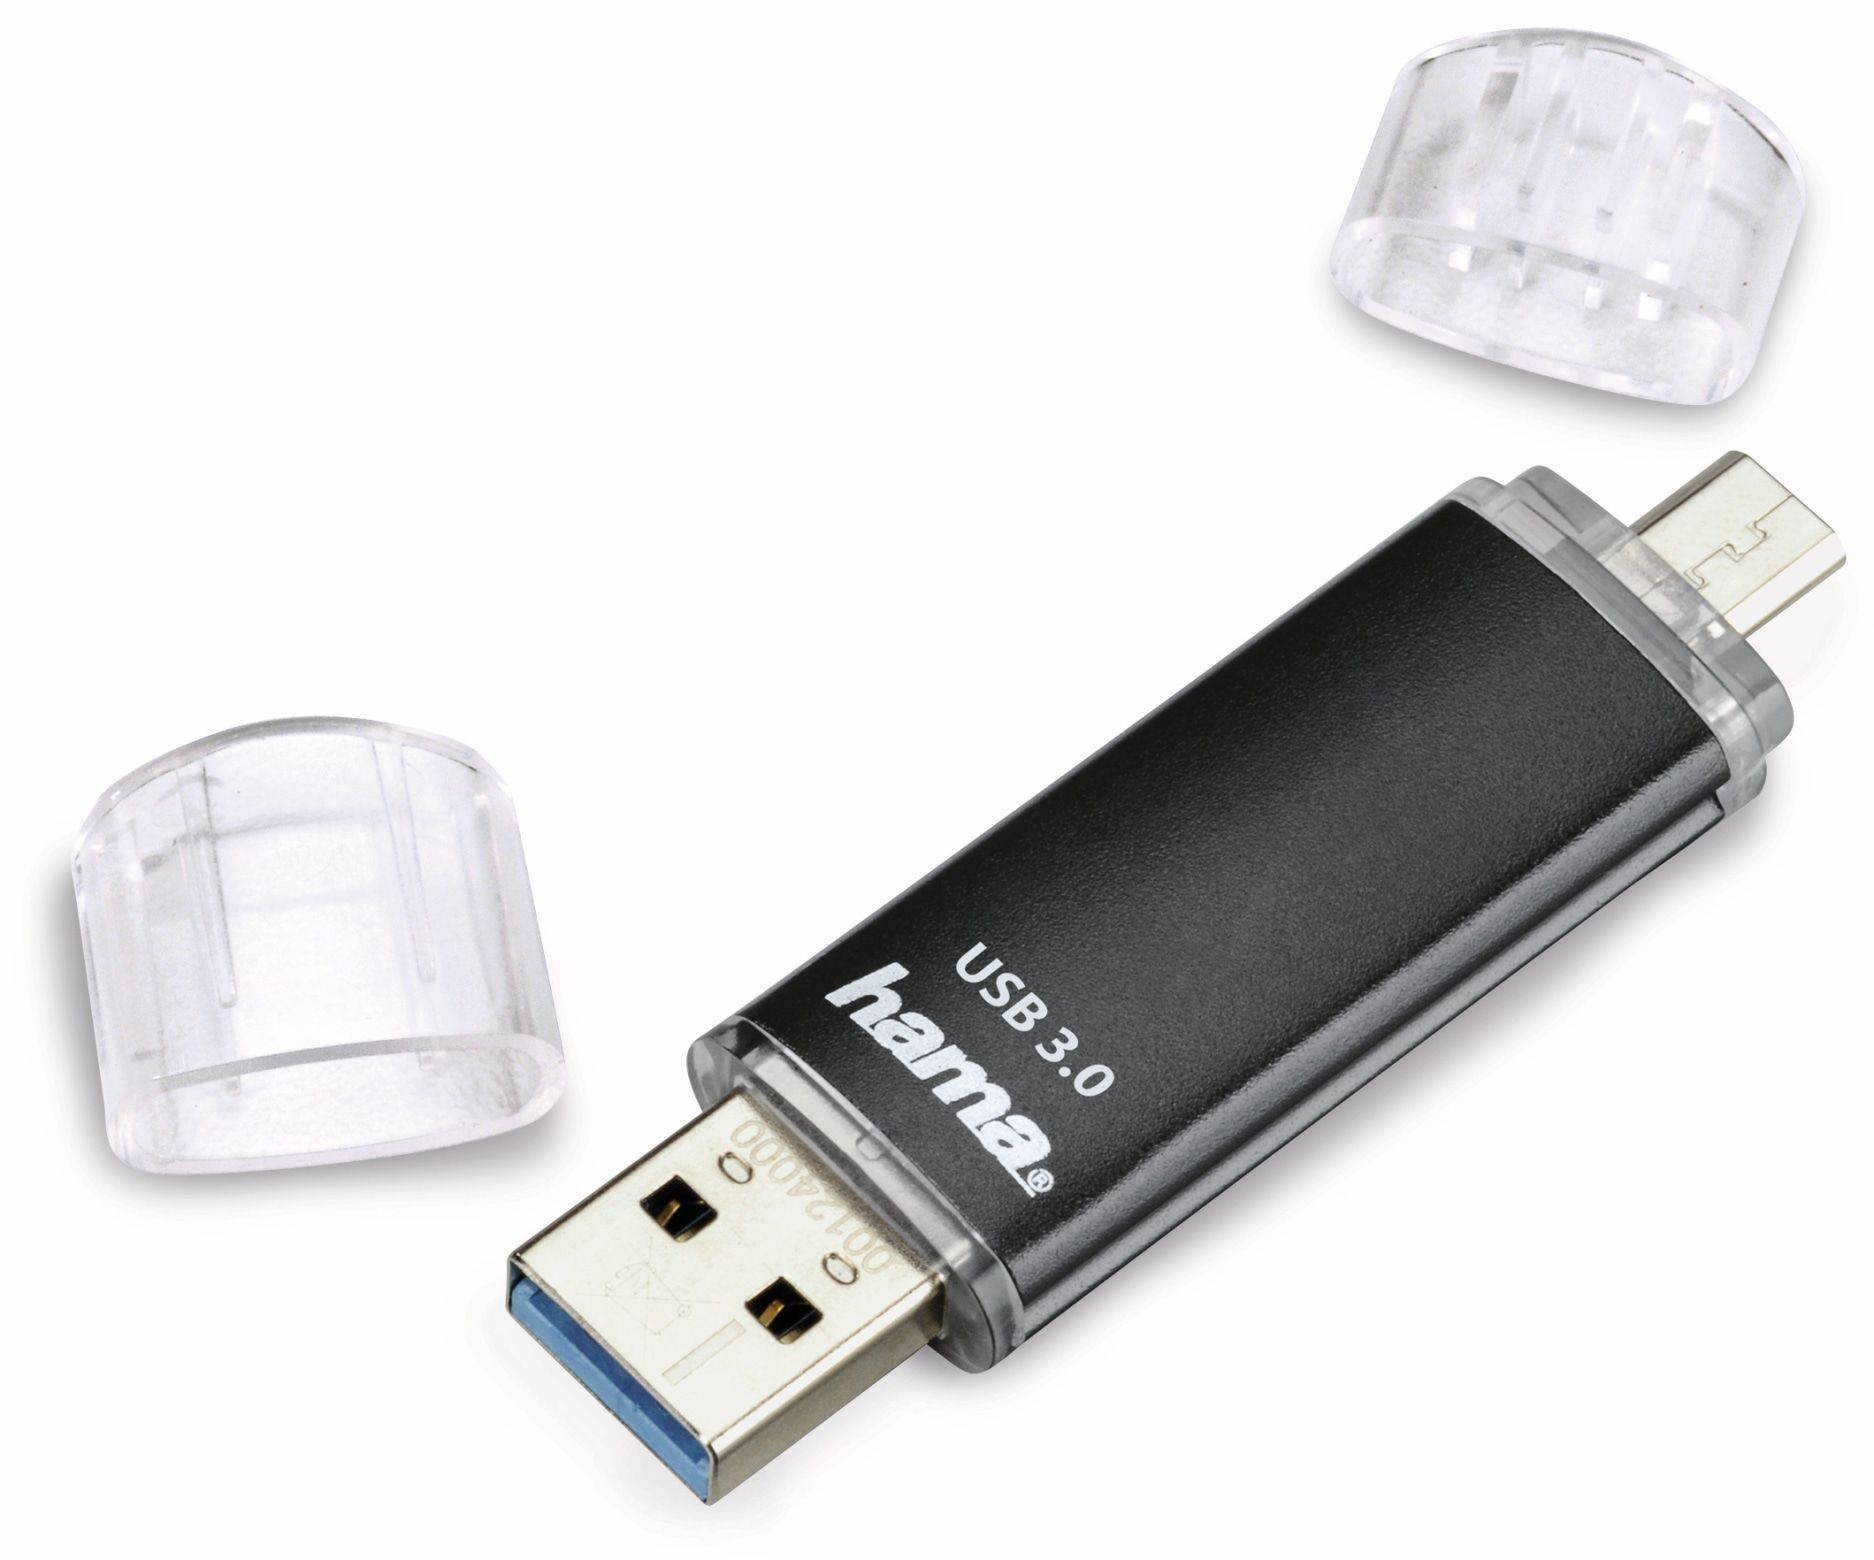 HAMA USB 3.0 GB) MB/s Laeta Twin, Speicherstick GB, 16 16 USB-Stick (grau, 40